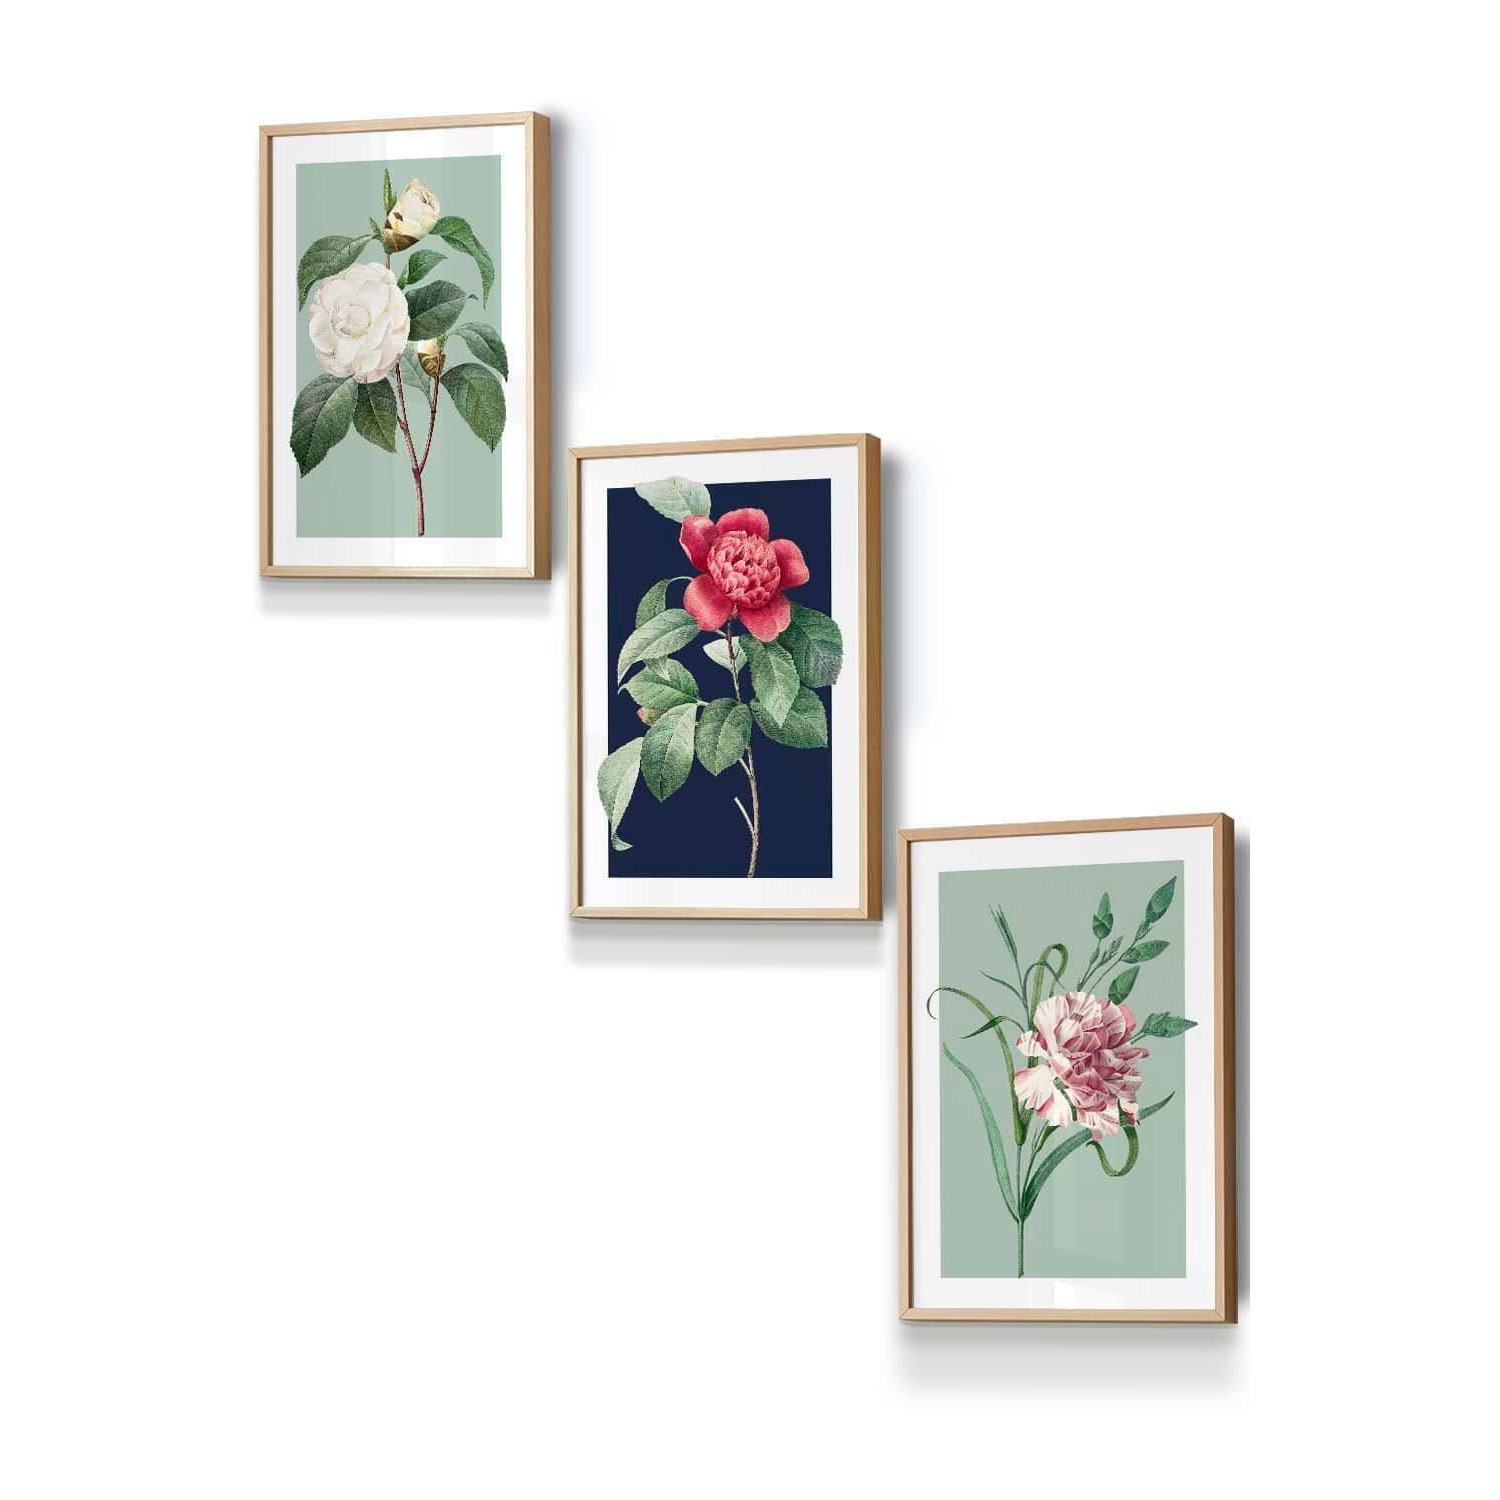 Set of 3 Oak Framed Vintage Flowers Camellia Blue and Green Wall Art - image 1